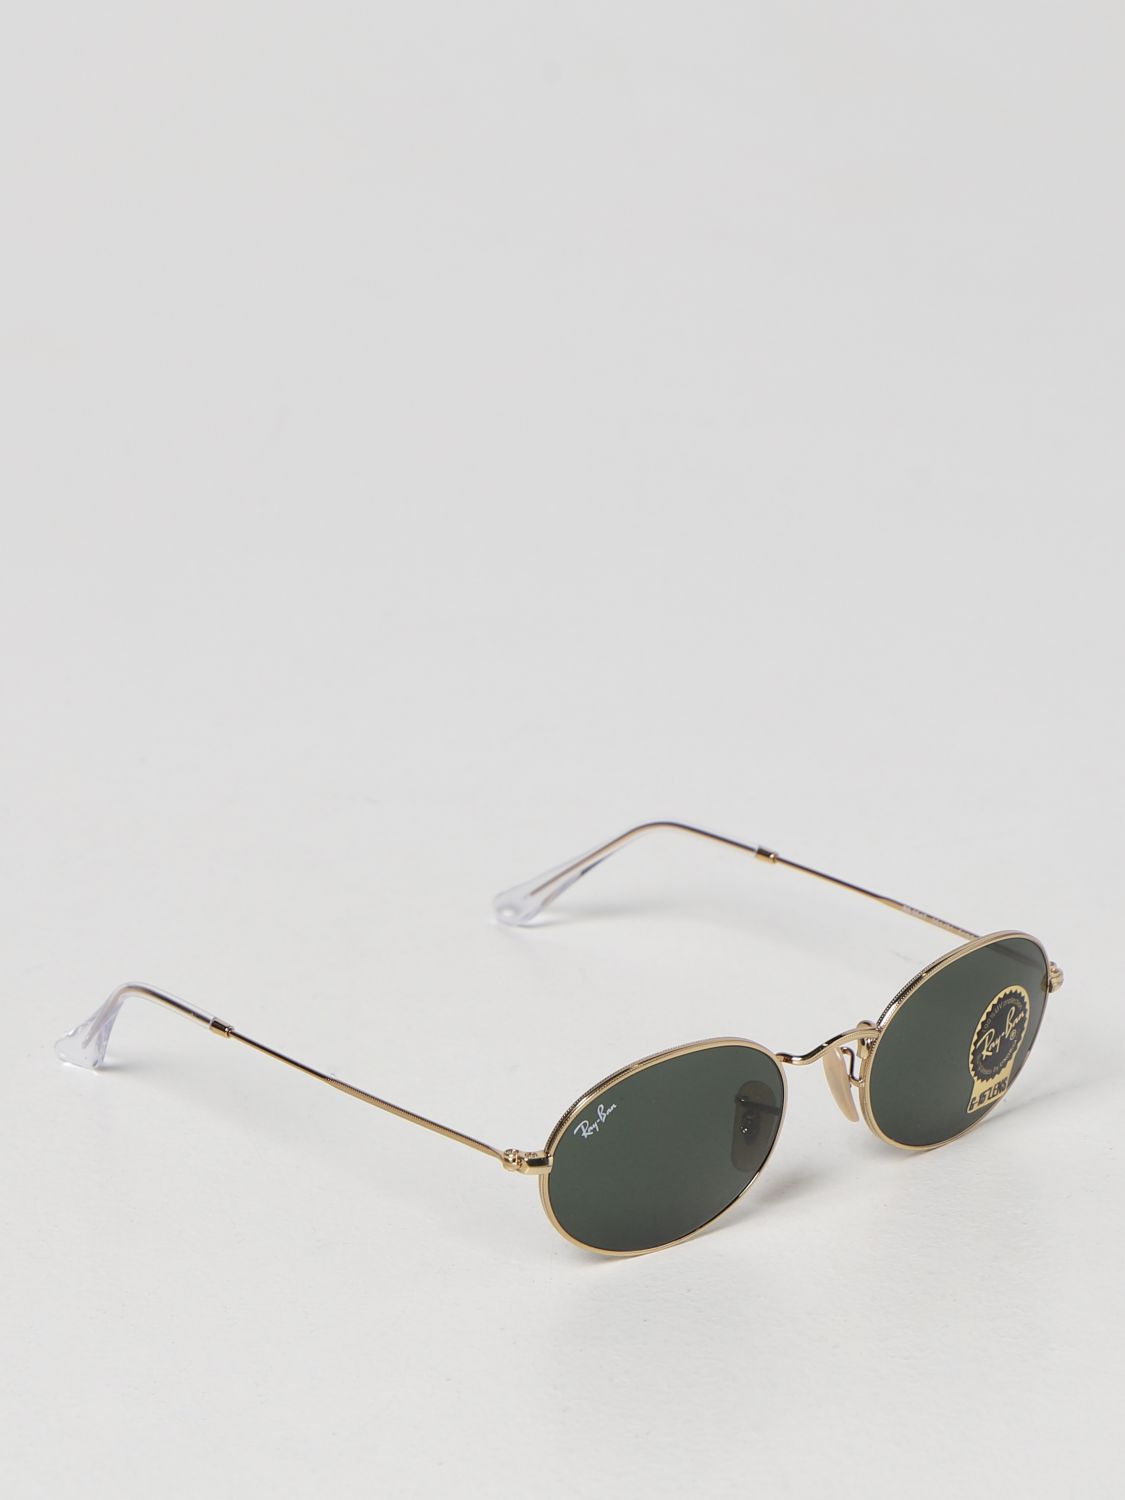 Ray-Ban Oval Ray-Ban metal sunglasses